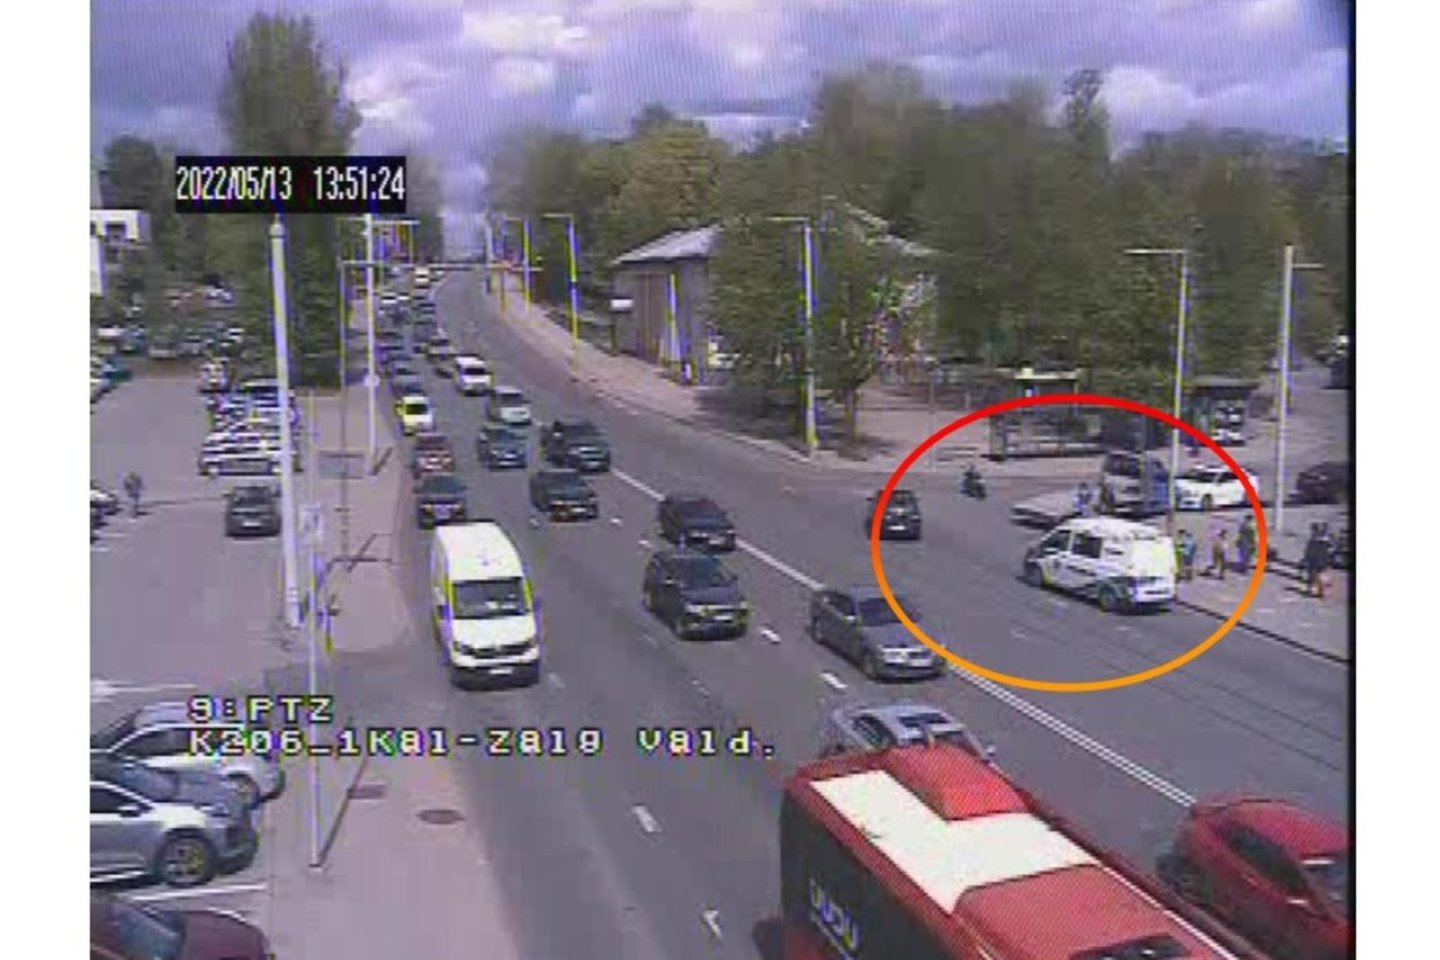  Vilniuje automobilis partrenkė motociklininką, tarp vairuotojų kilo konfliktas.<br> sviesoforai.lt nuotr.